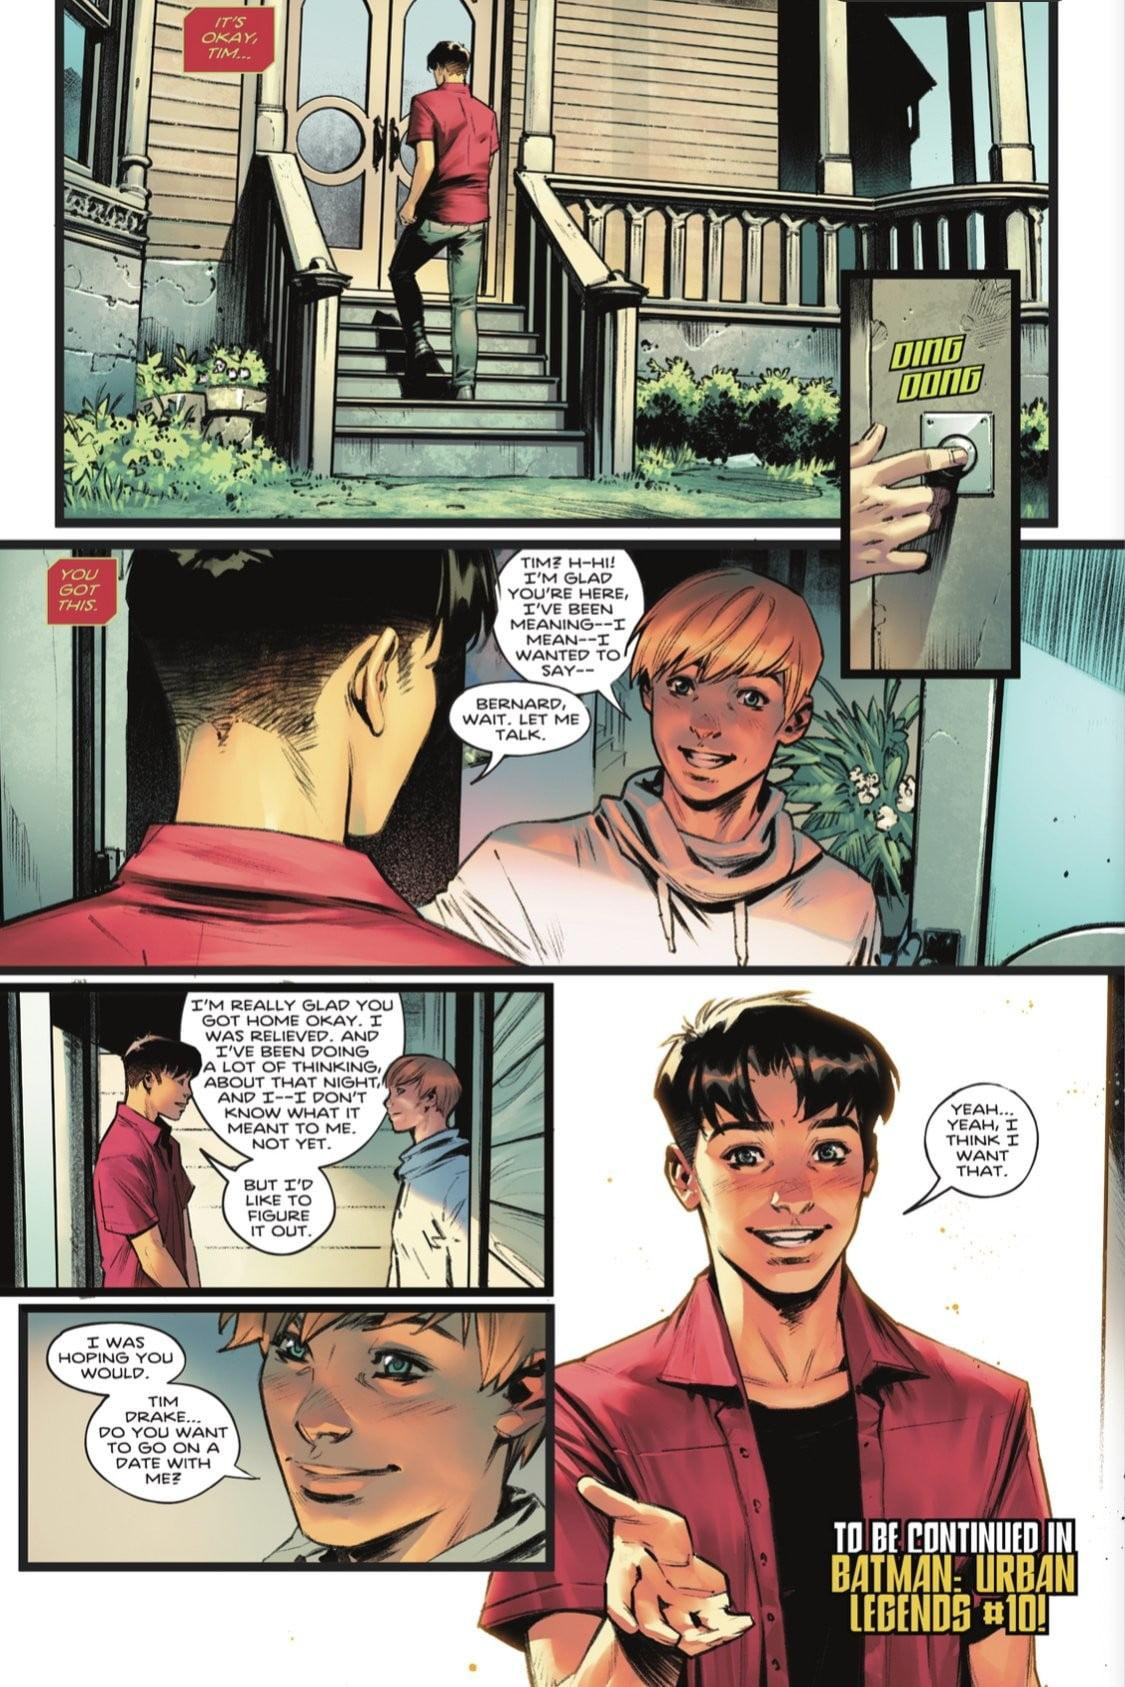 Comic en el que Robin se confiesa bisexual